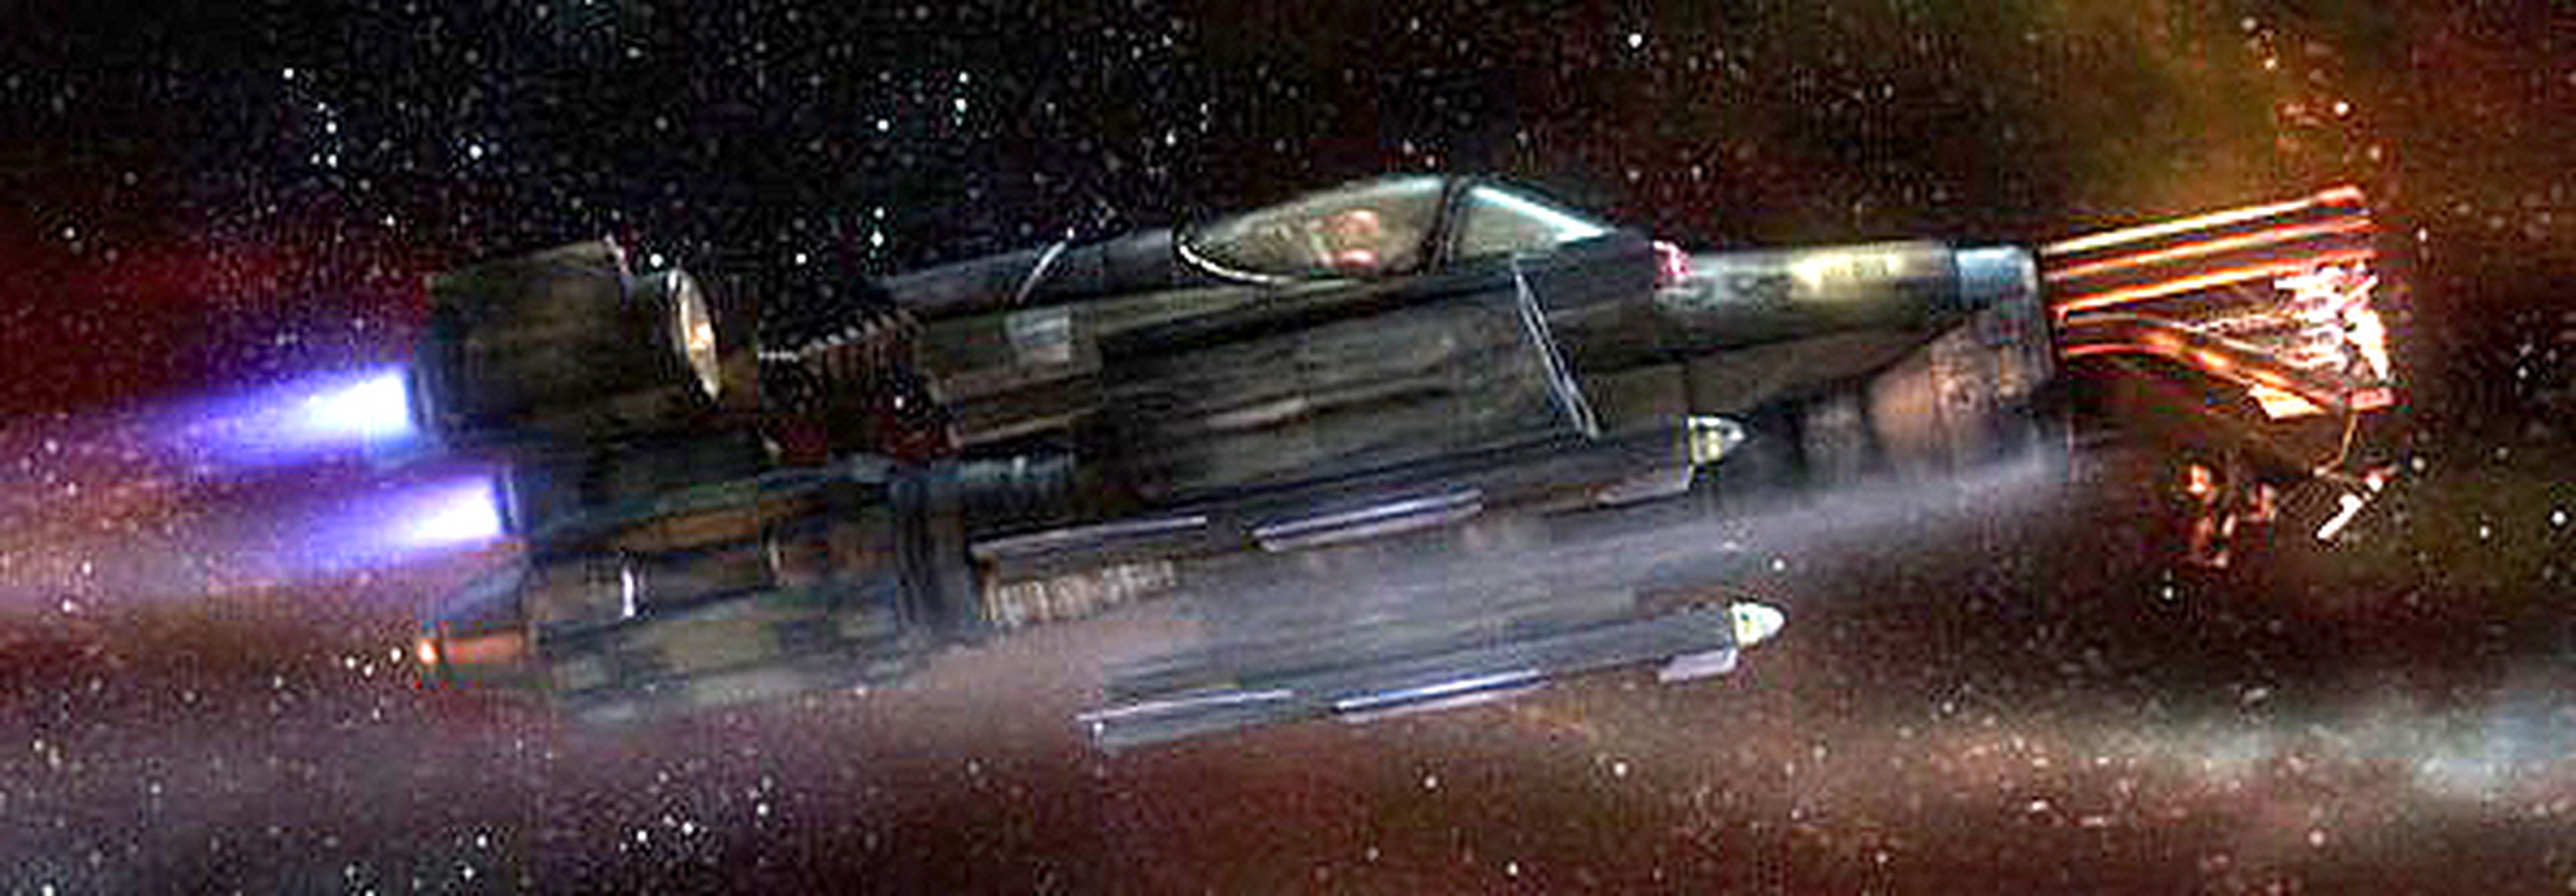 Del juego al cine: crítica de Wing Commander